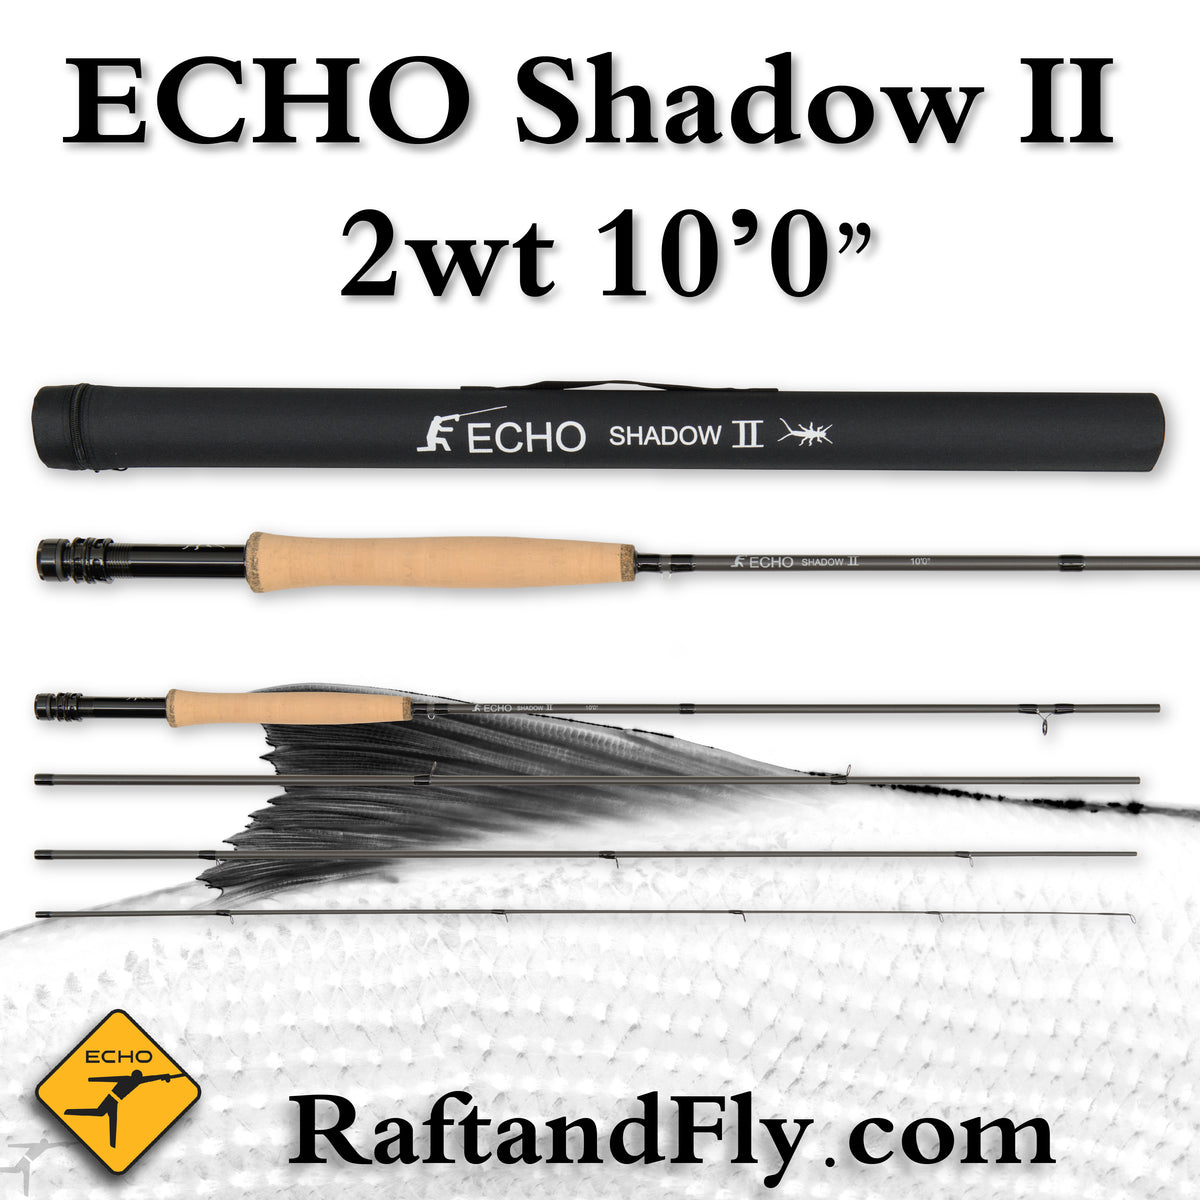 Echo Shadow II